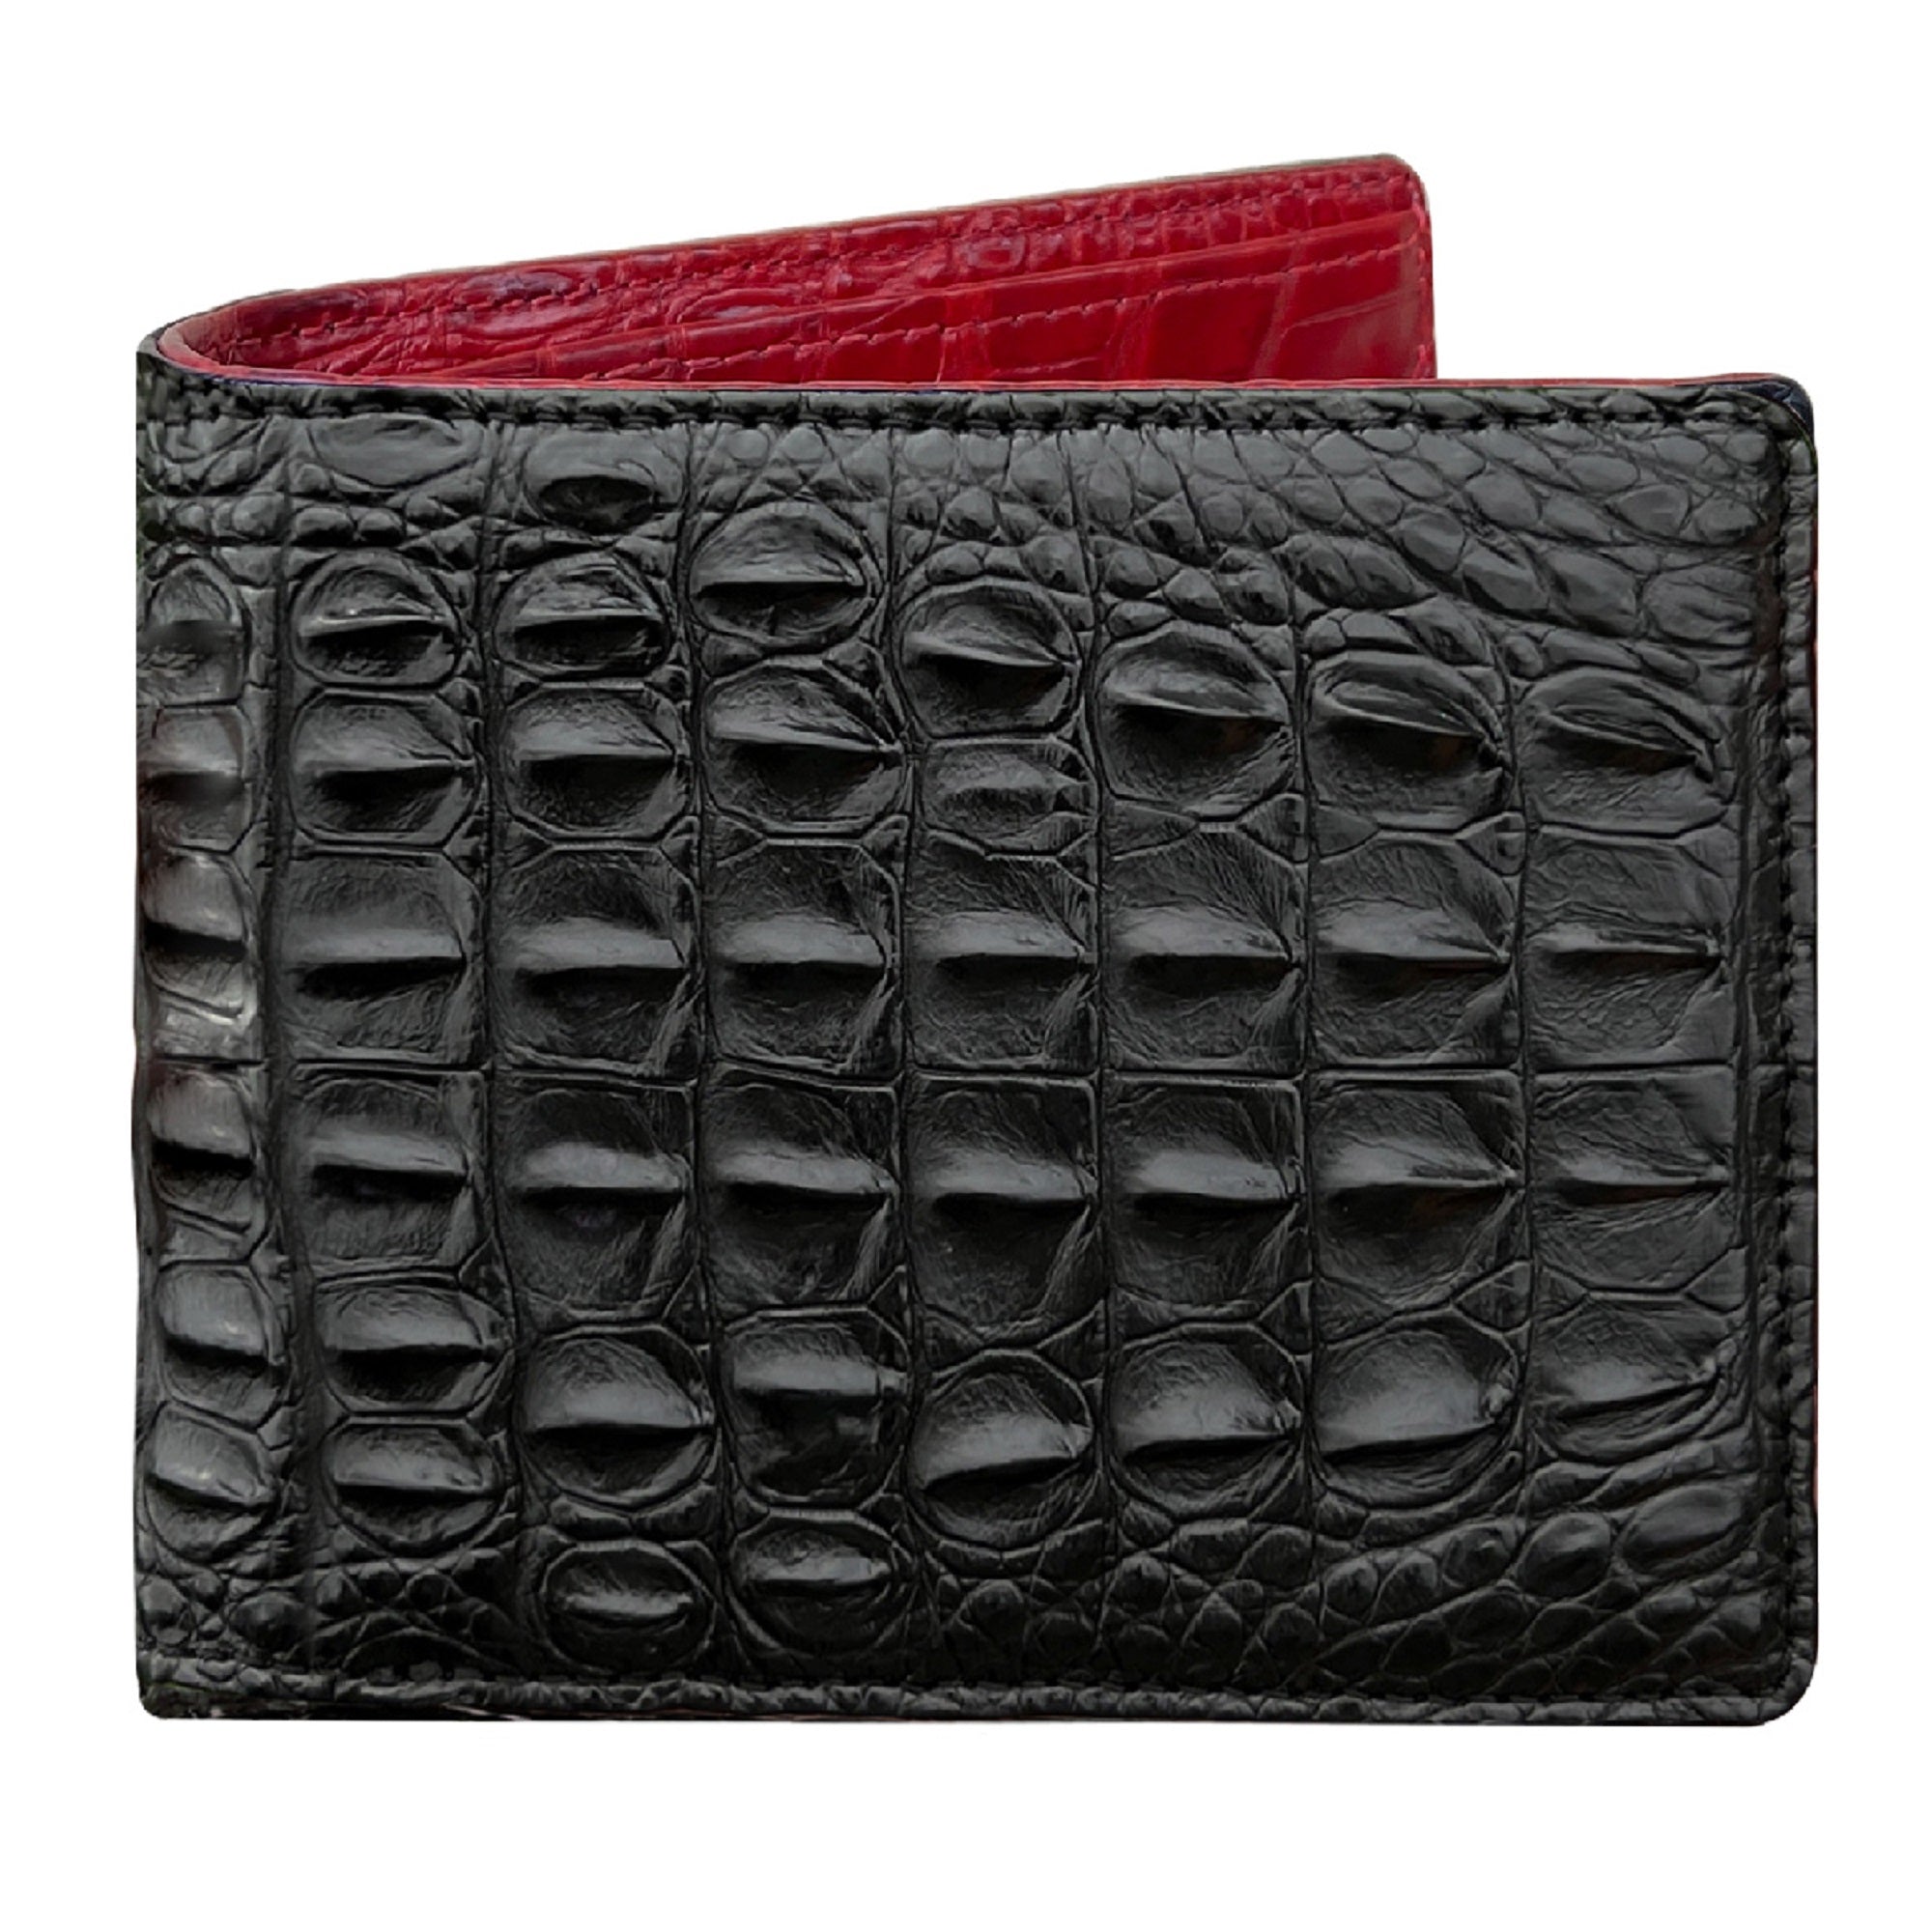 Black Double Side Alligator Hornback Leather Bifold Wallet